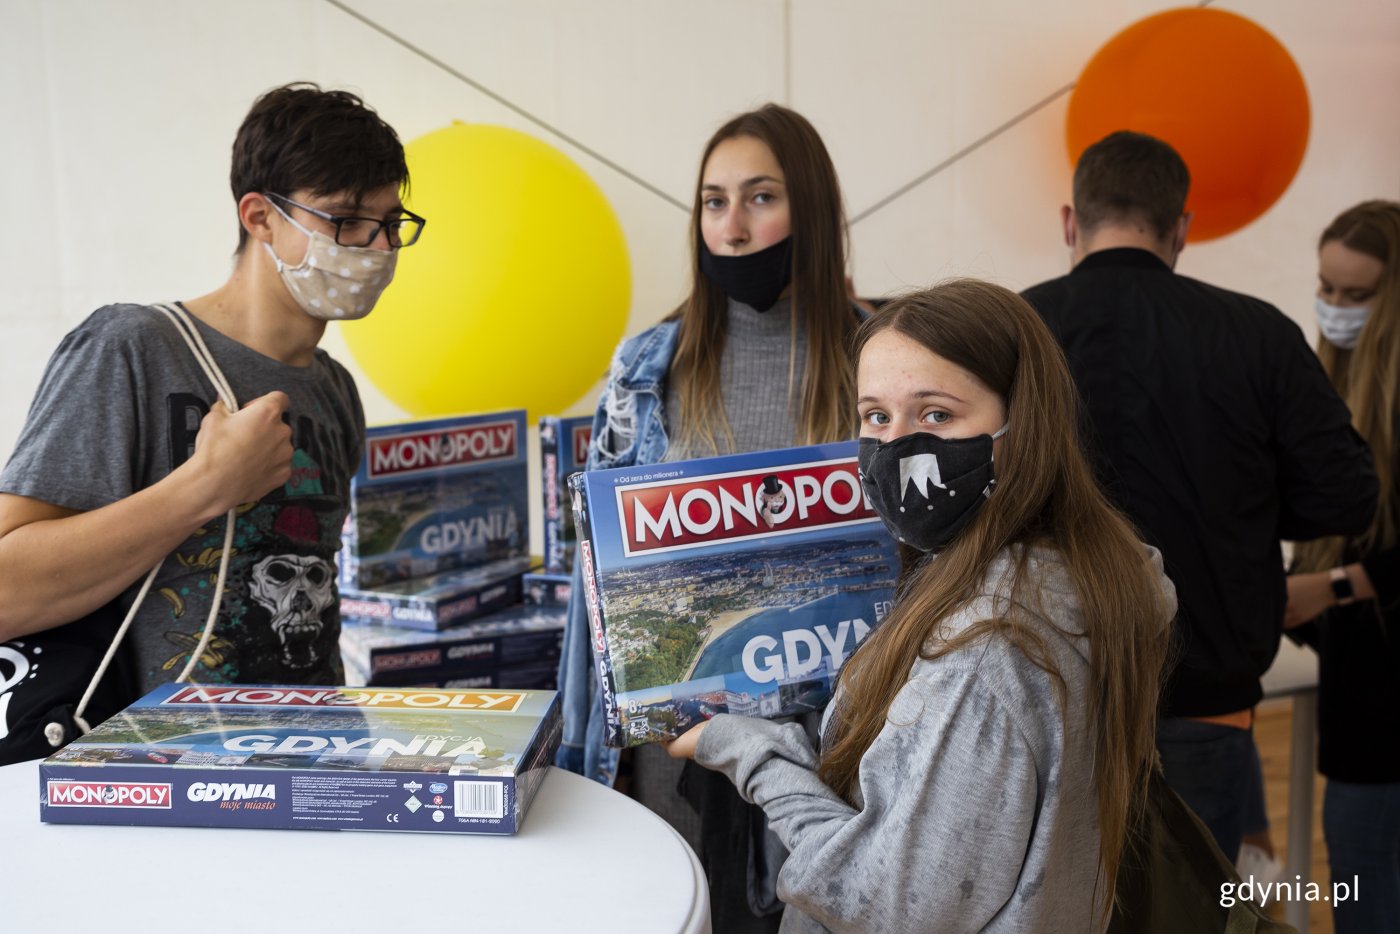 Premiera gry Monopoly Gdynia okazała się ogromnym sukcesem. Gdynianie i miłośnicy miasta chętnie sięgnęli po grę, szybko wykupując 3000 egzemplarzy w ramach pierwszego nakładu // fot. Przemysław Kozłowski